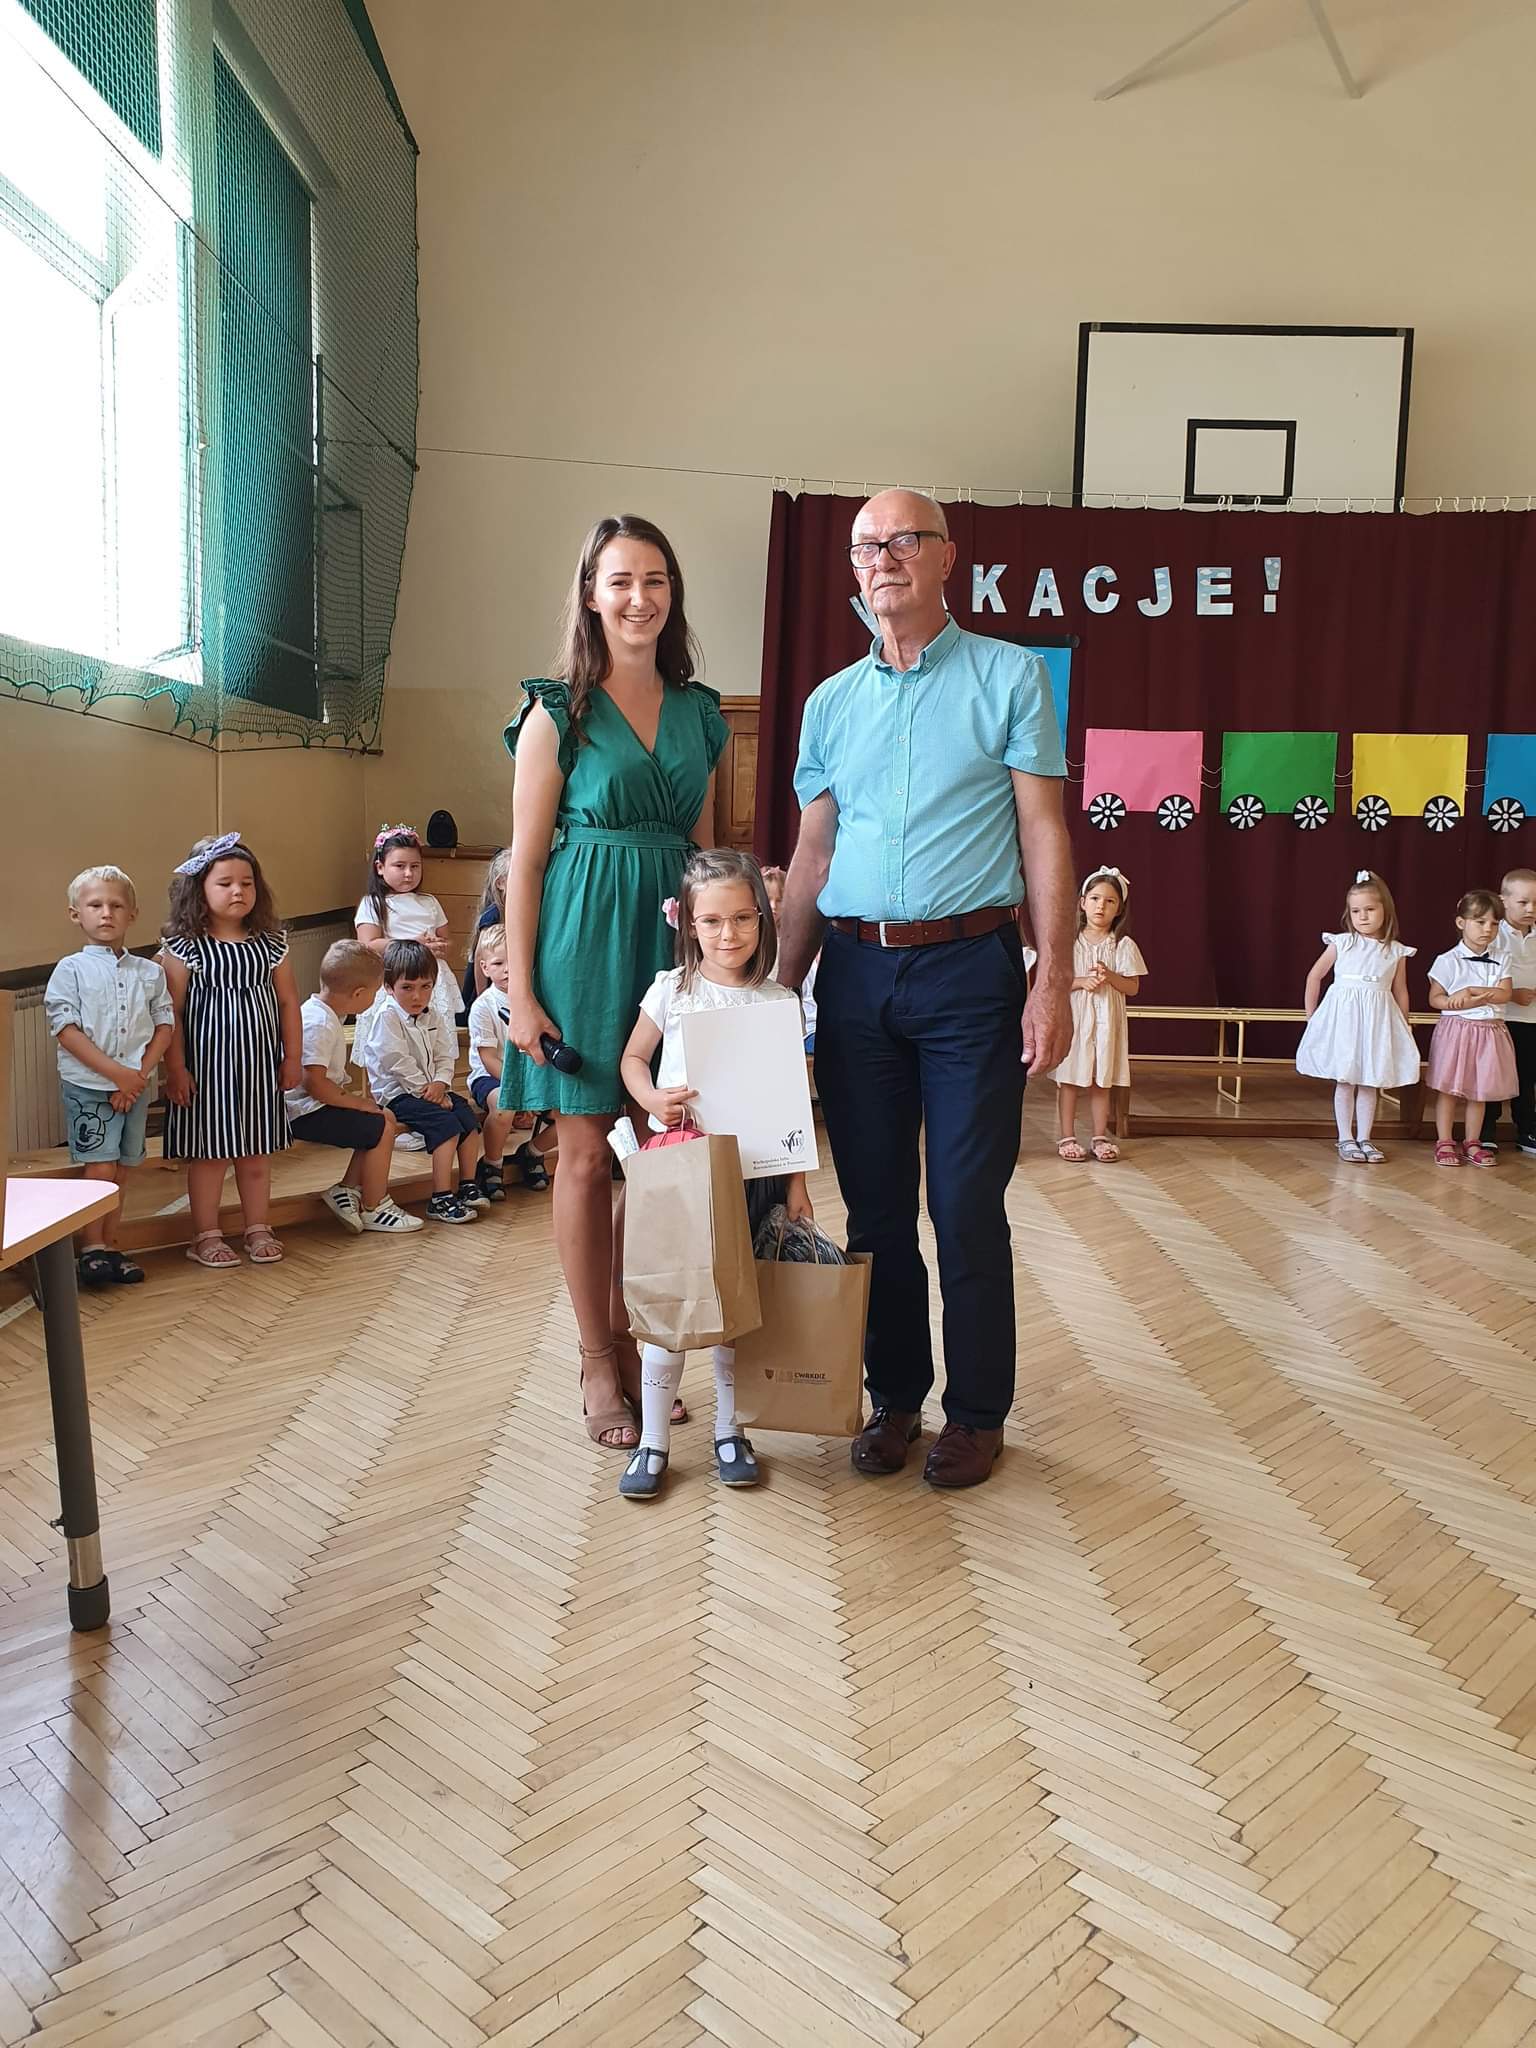 Na zdjęciu widać małą dziewczynkę (w wieku przedszkolnym), jej przedszkolną opiekunkę oraz dyrektora CWRKDiZ w Lesznie.
Dziewczynka trzyma w ręce nagrody w papierowych torbach.